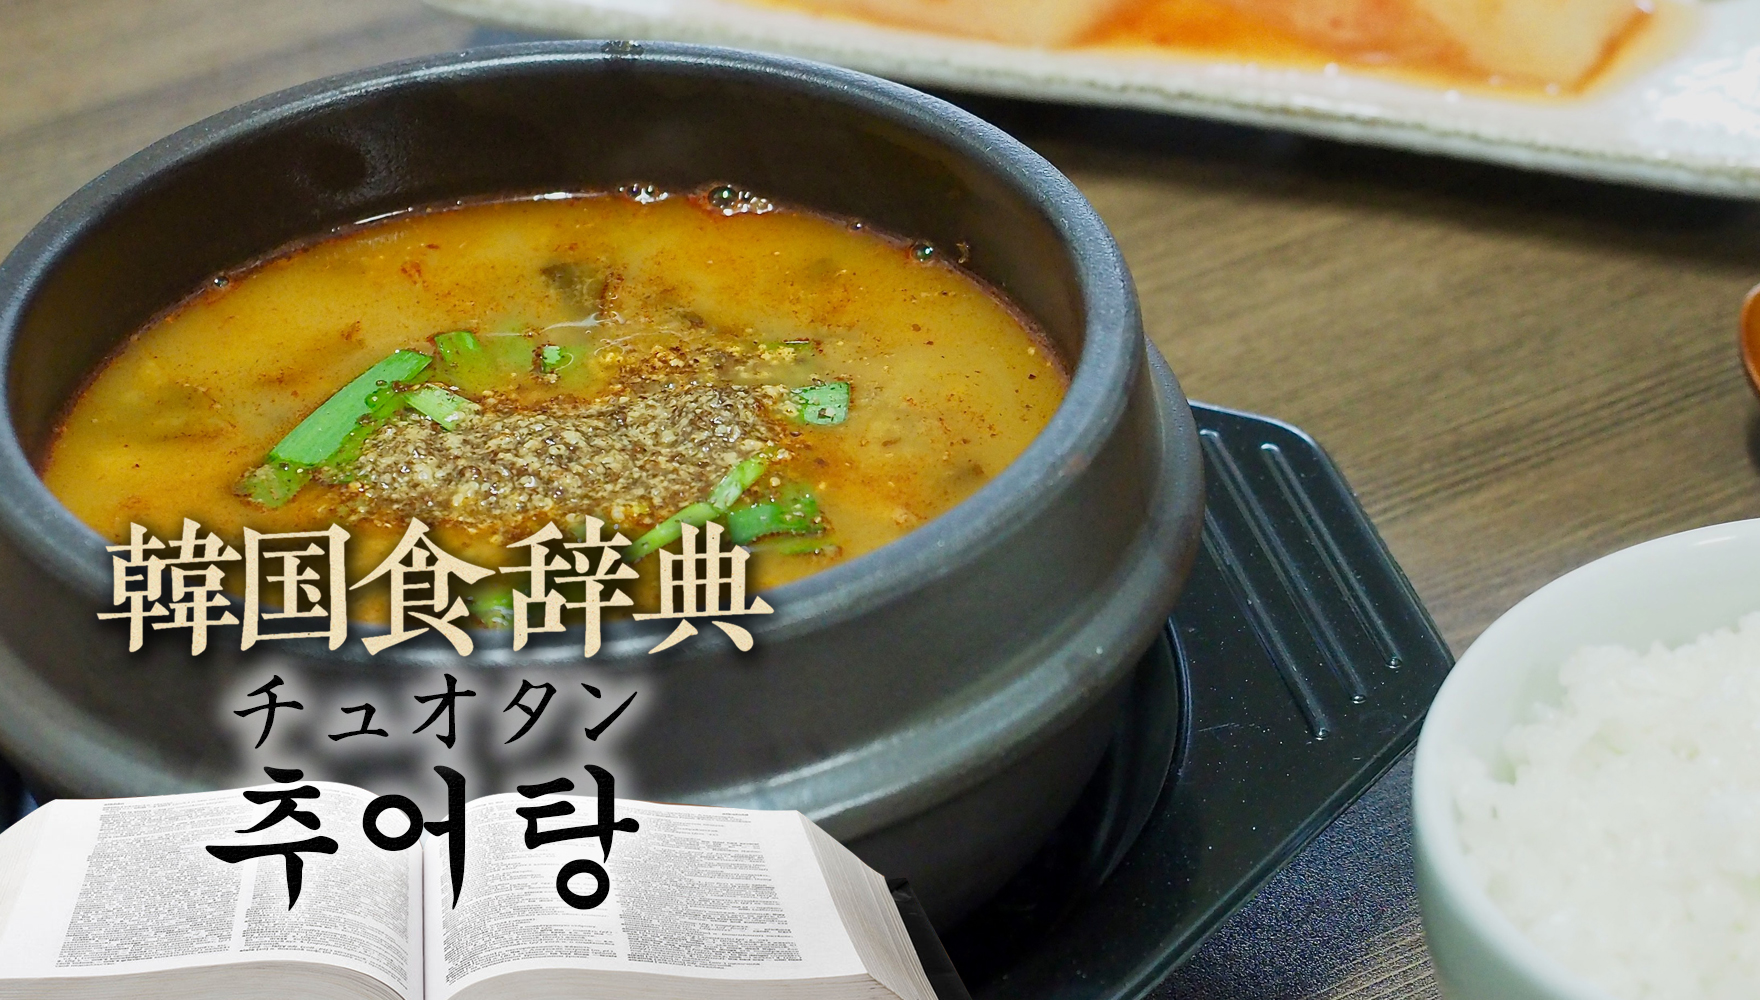 韓国食辞典「チュオタン」